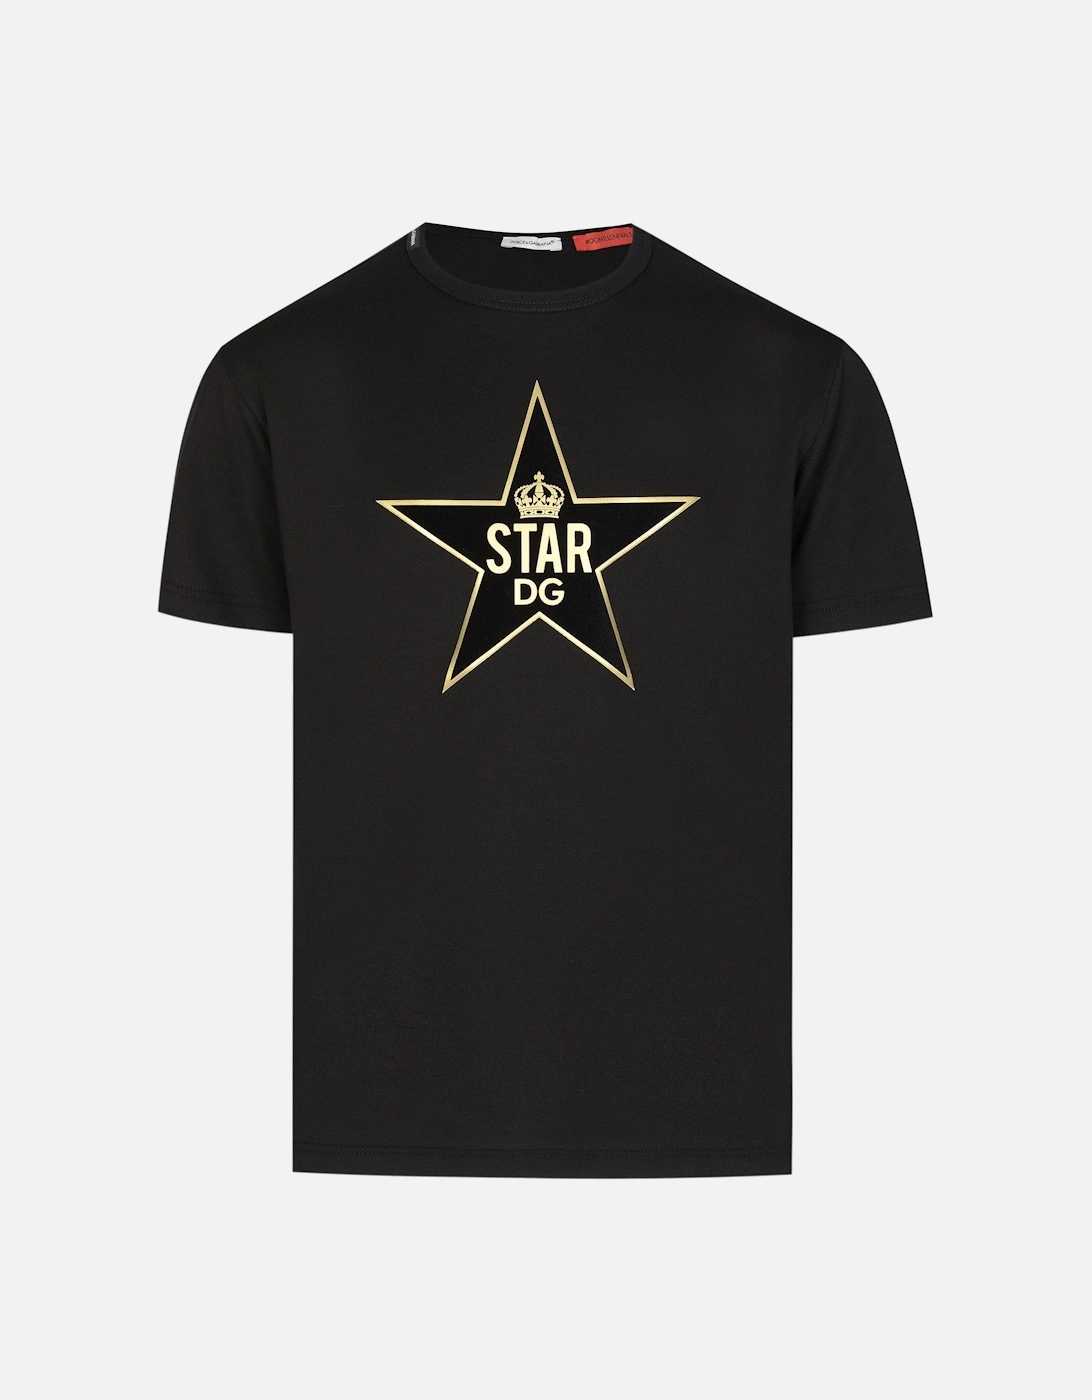 Boys DG Star Printed T-shirt, 4 of 3